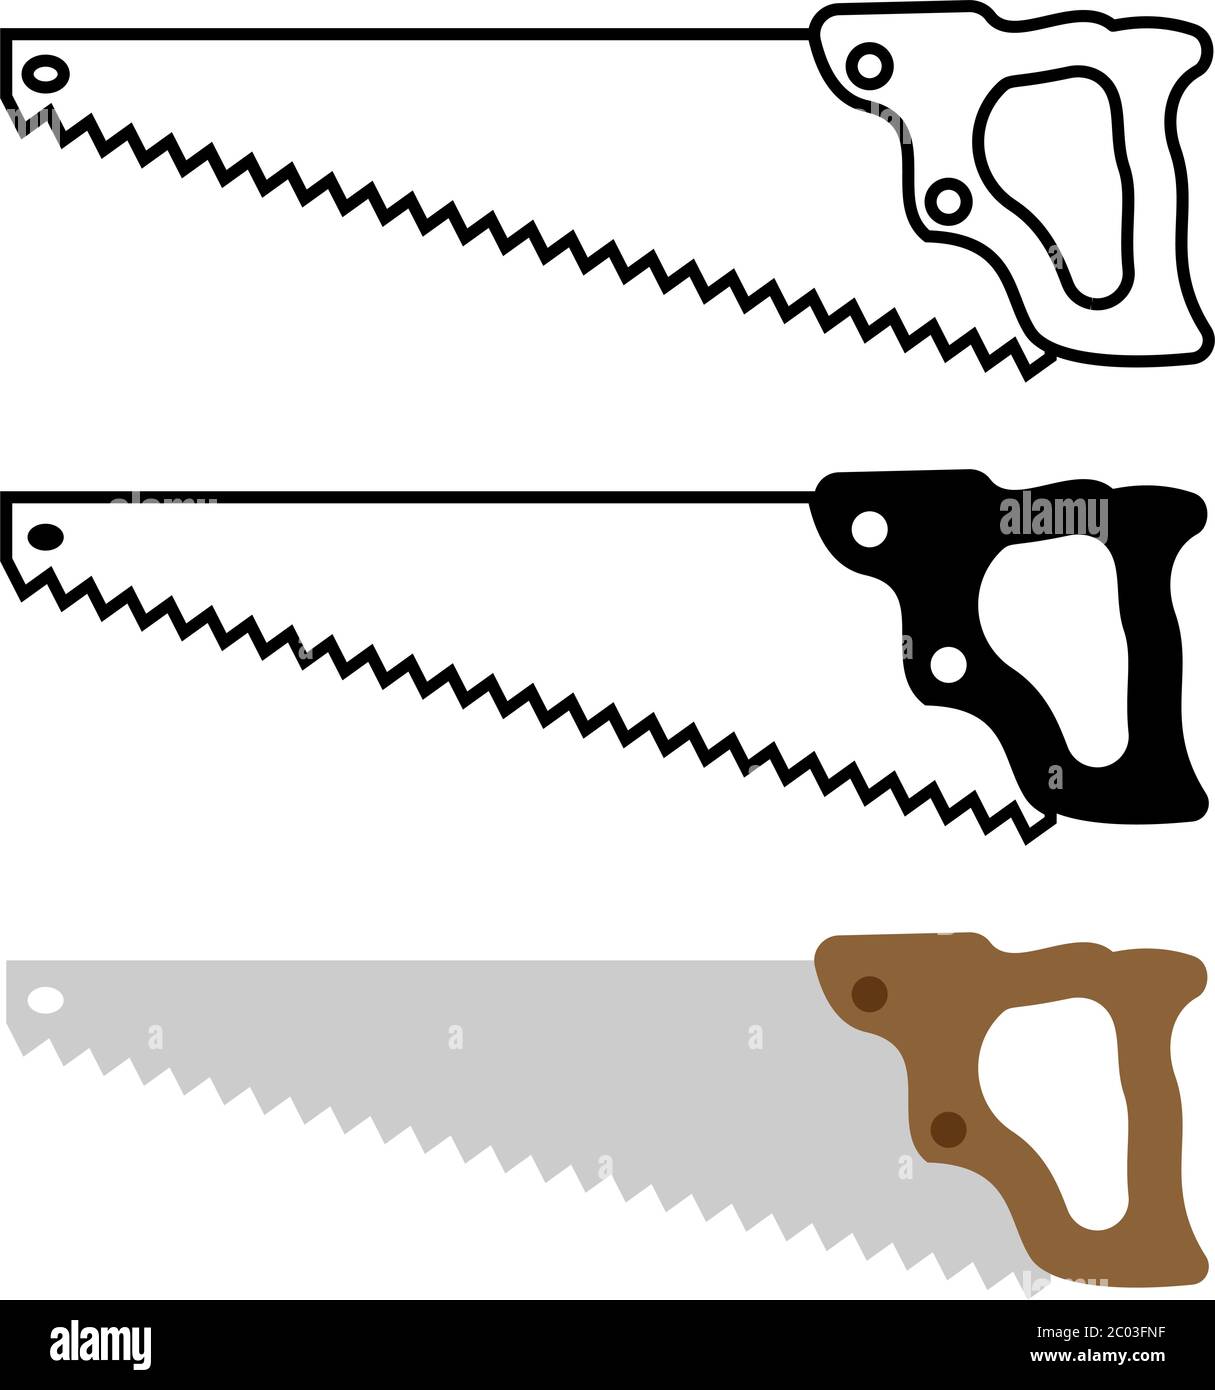 Illustrazione vettoriale dell'icona isolata della sega a mano Illustrazione Vettoriale